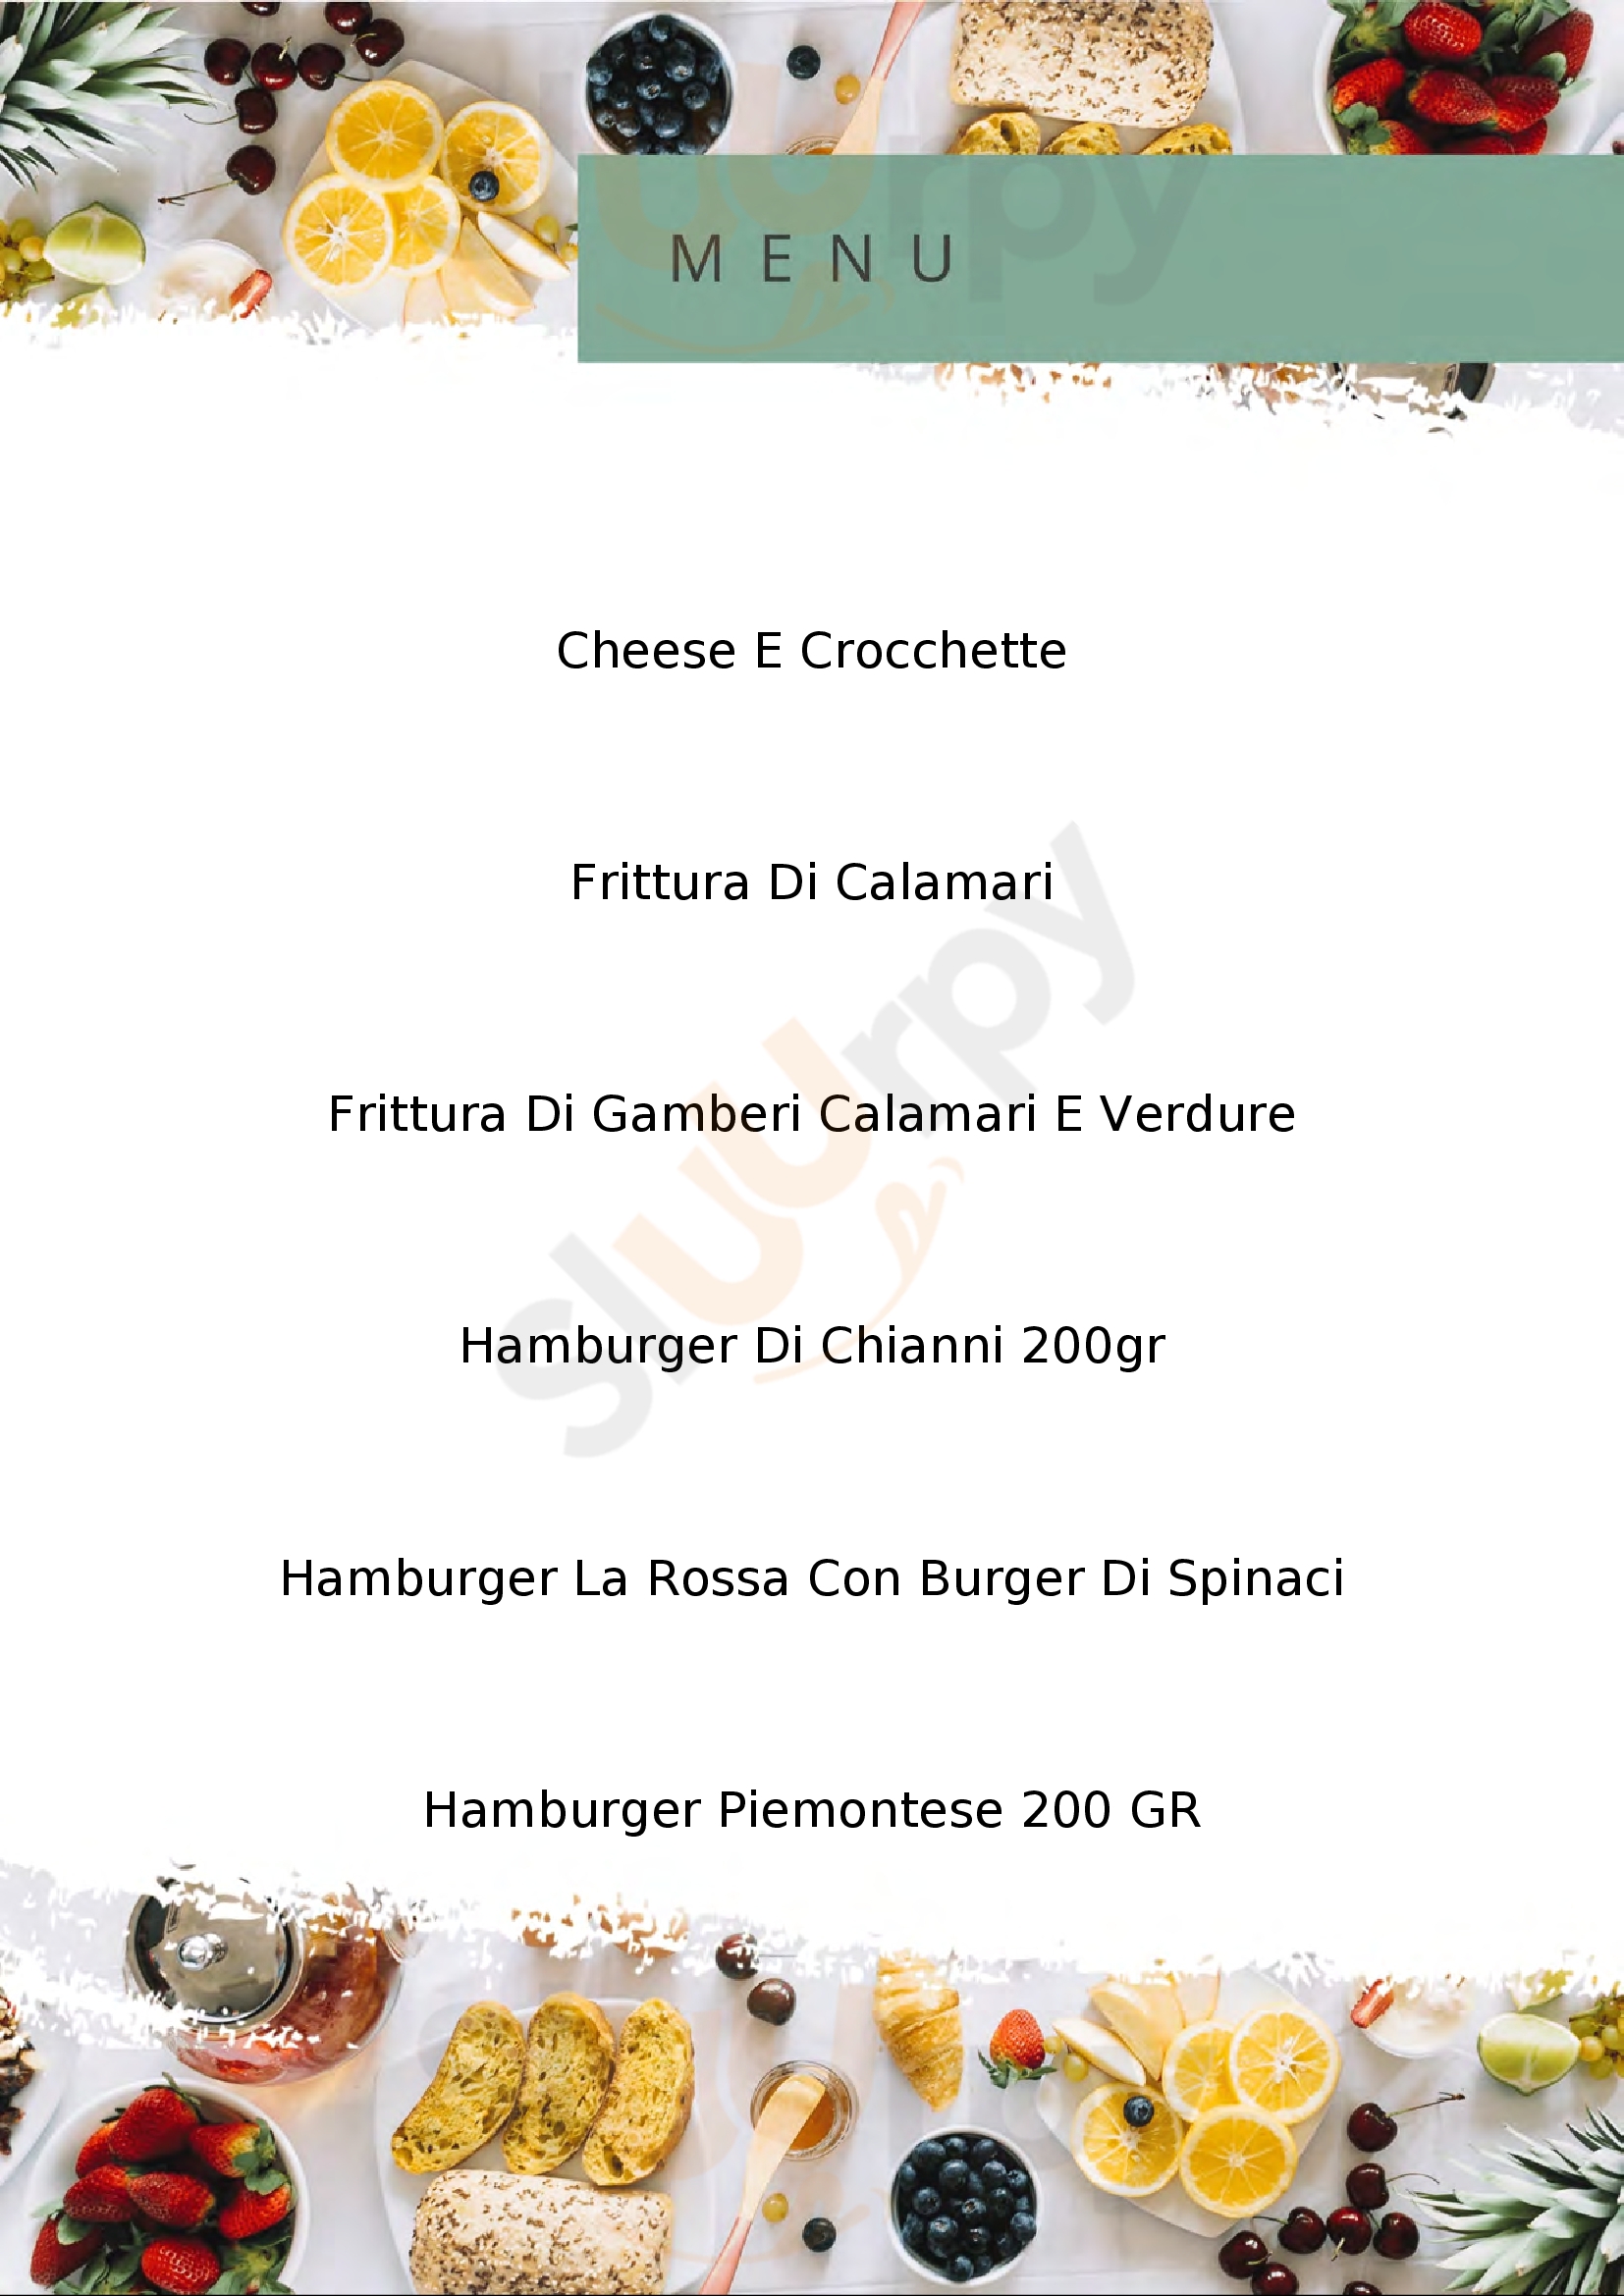 Hamburgeria & Friggitoria Del Borgo Lucca menù 1 pagina